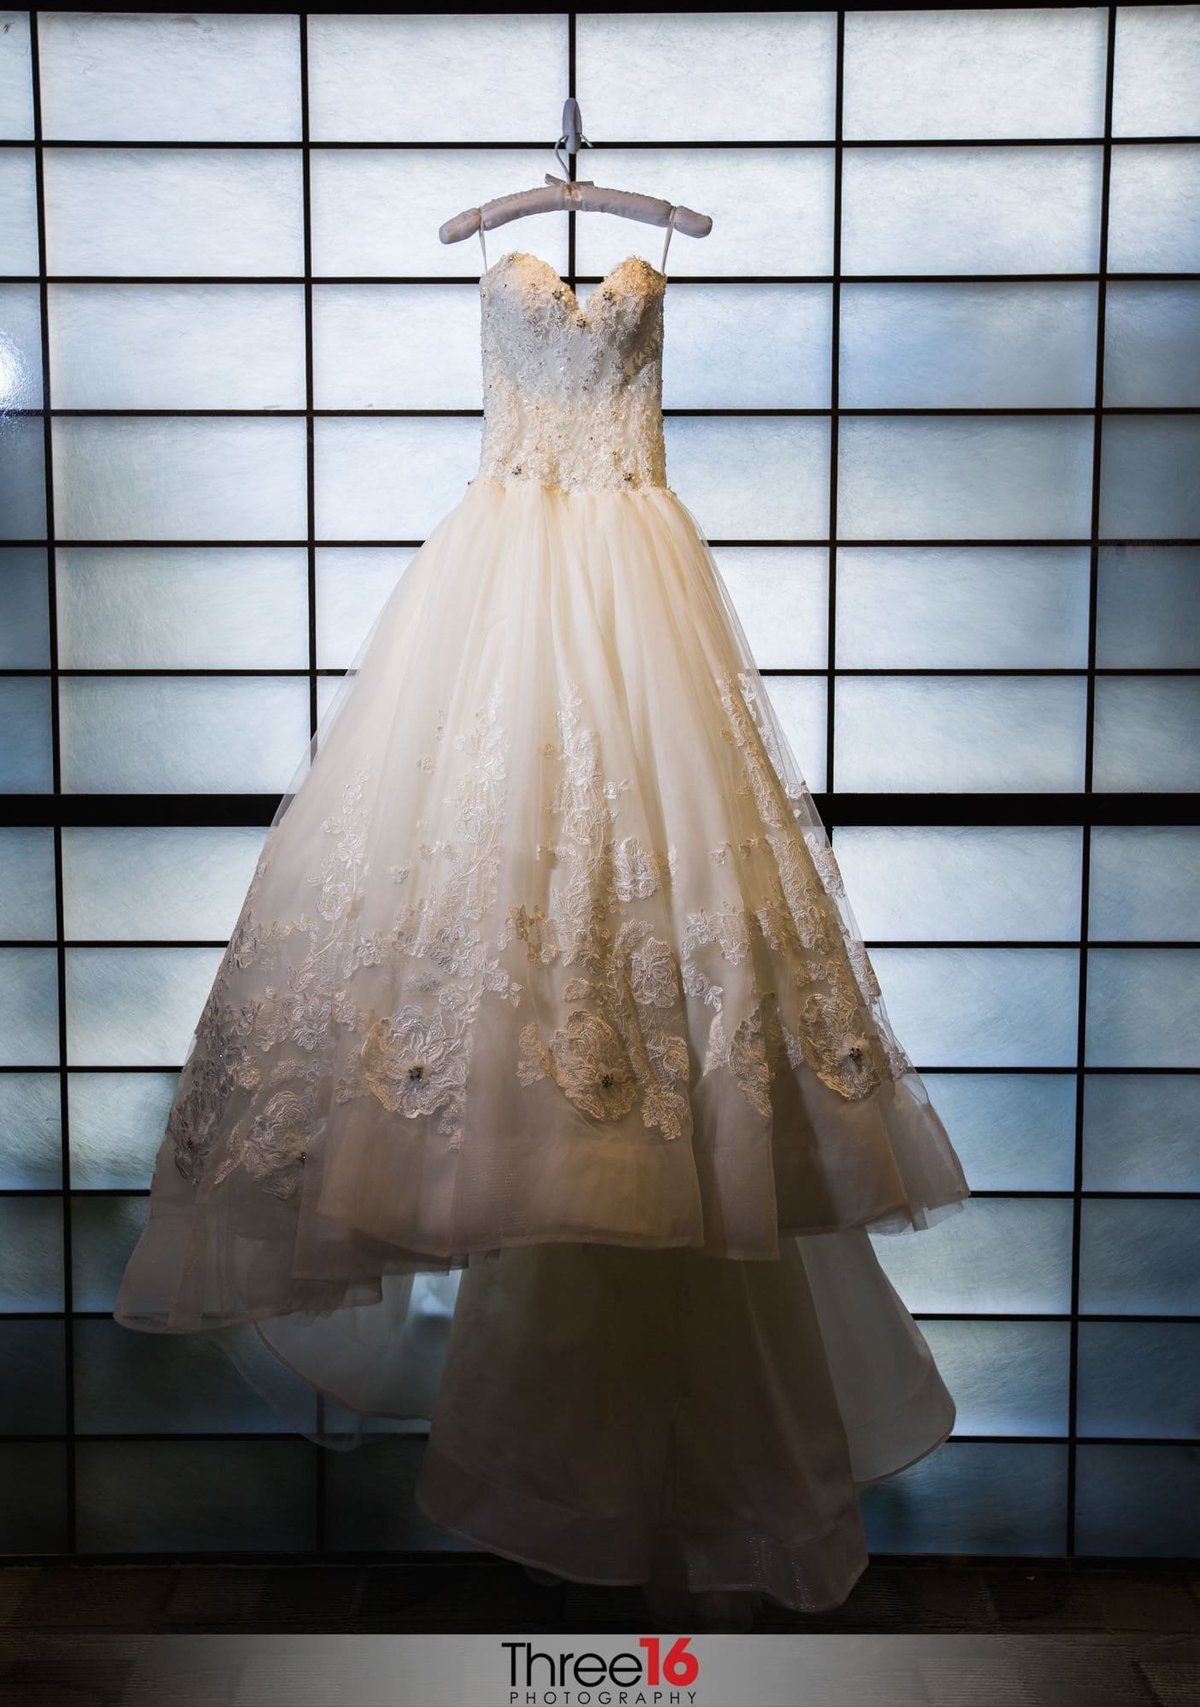 Bride's beautiful gown hangs on display